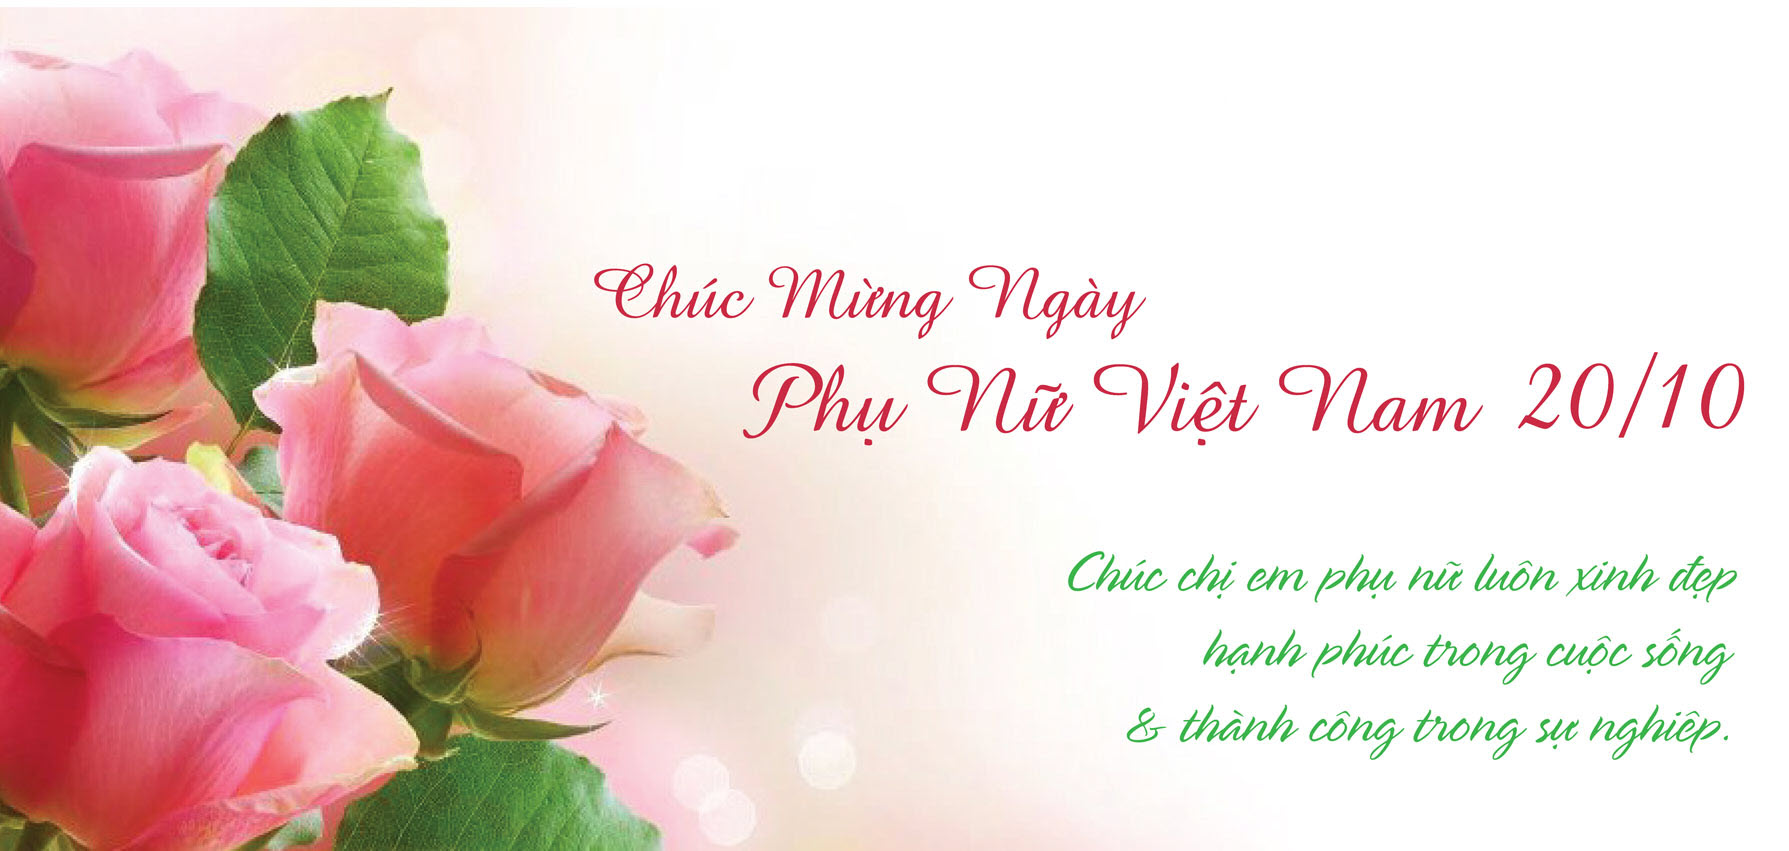 Lời chúc ngày Phụ nữ Việt Nam ý nghĩa